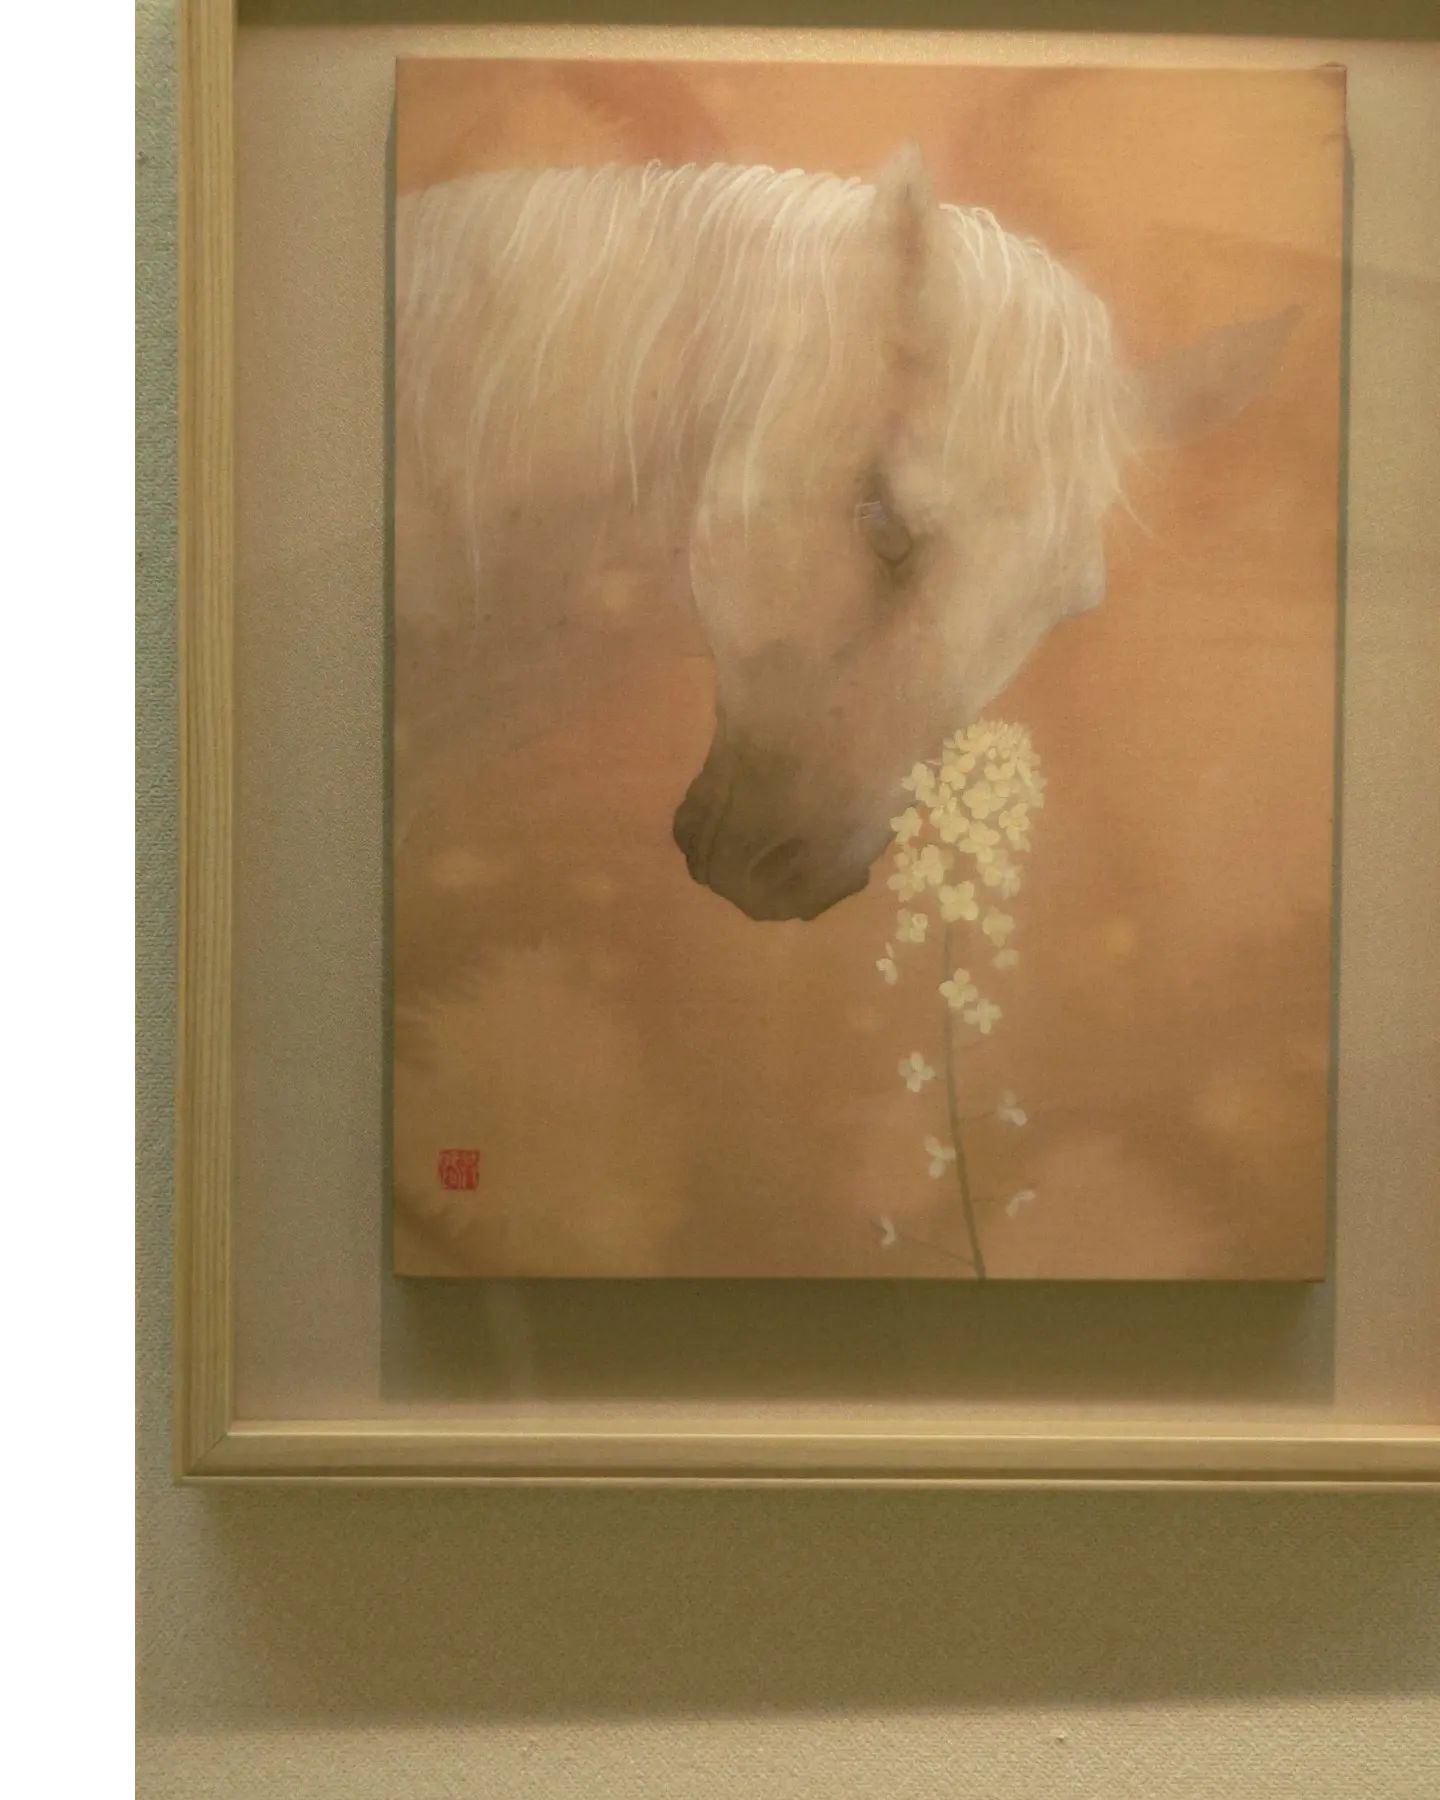 『春を願う』F6号
モデルにした馬は、オグリキャップの娘のナリタキクヒメです。季節がめぐって、春がやってくることは特別なことなのだと感じ、絵にしました。

中内共路個展『風の言の葉』
場所　広島福屋八丁堀本店7階美術画廊
会期　12月8日（木）～14日（水）
時間　10:30～19:30　（最終日は16:00まで）